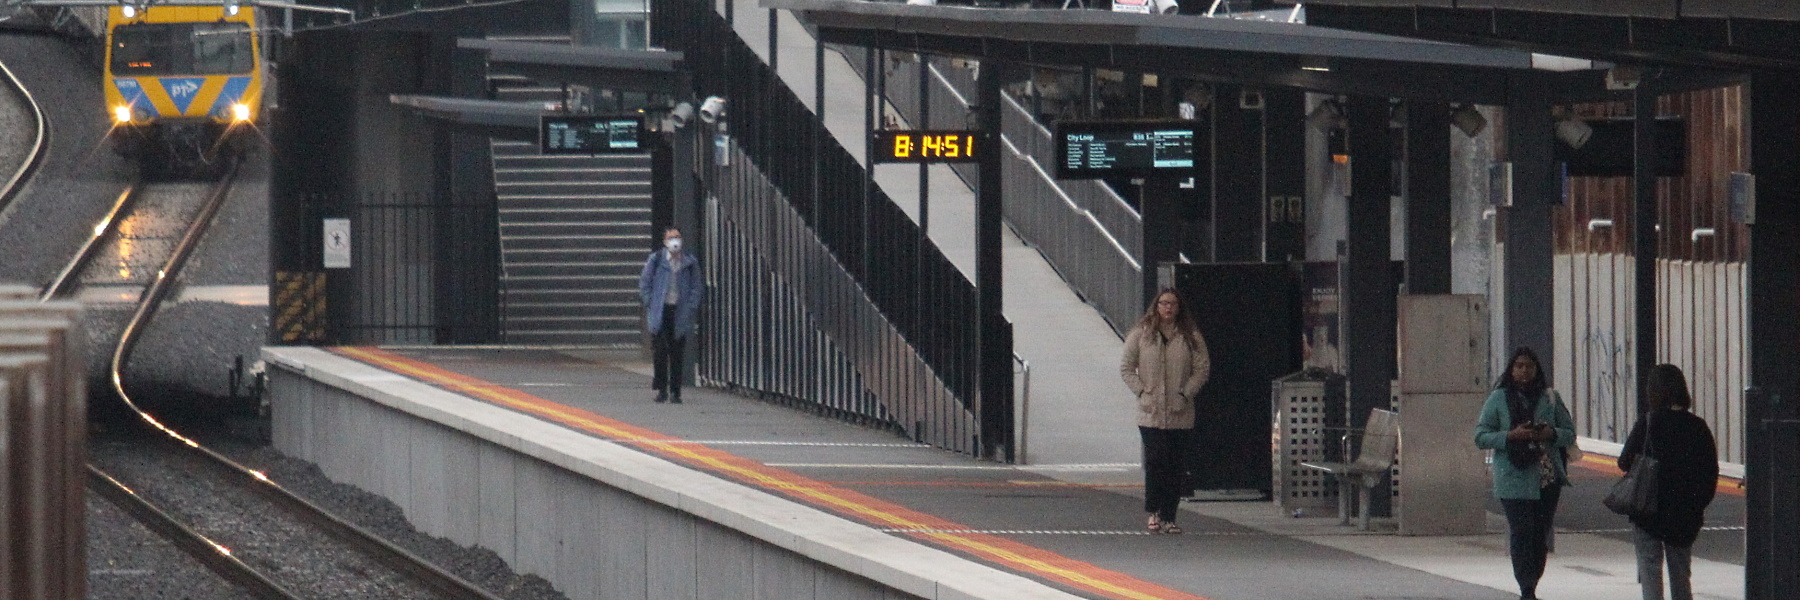 Bentleigh station platform